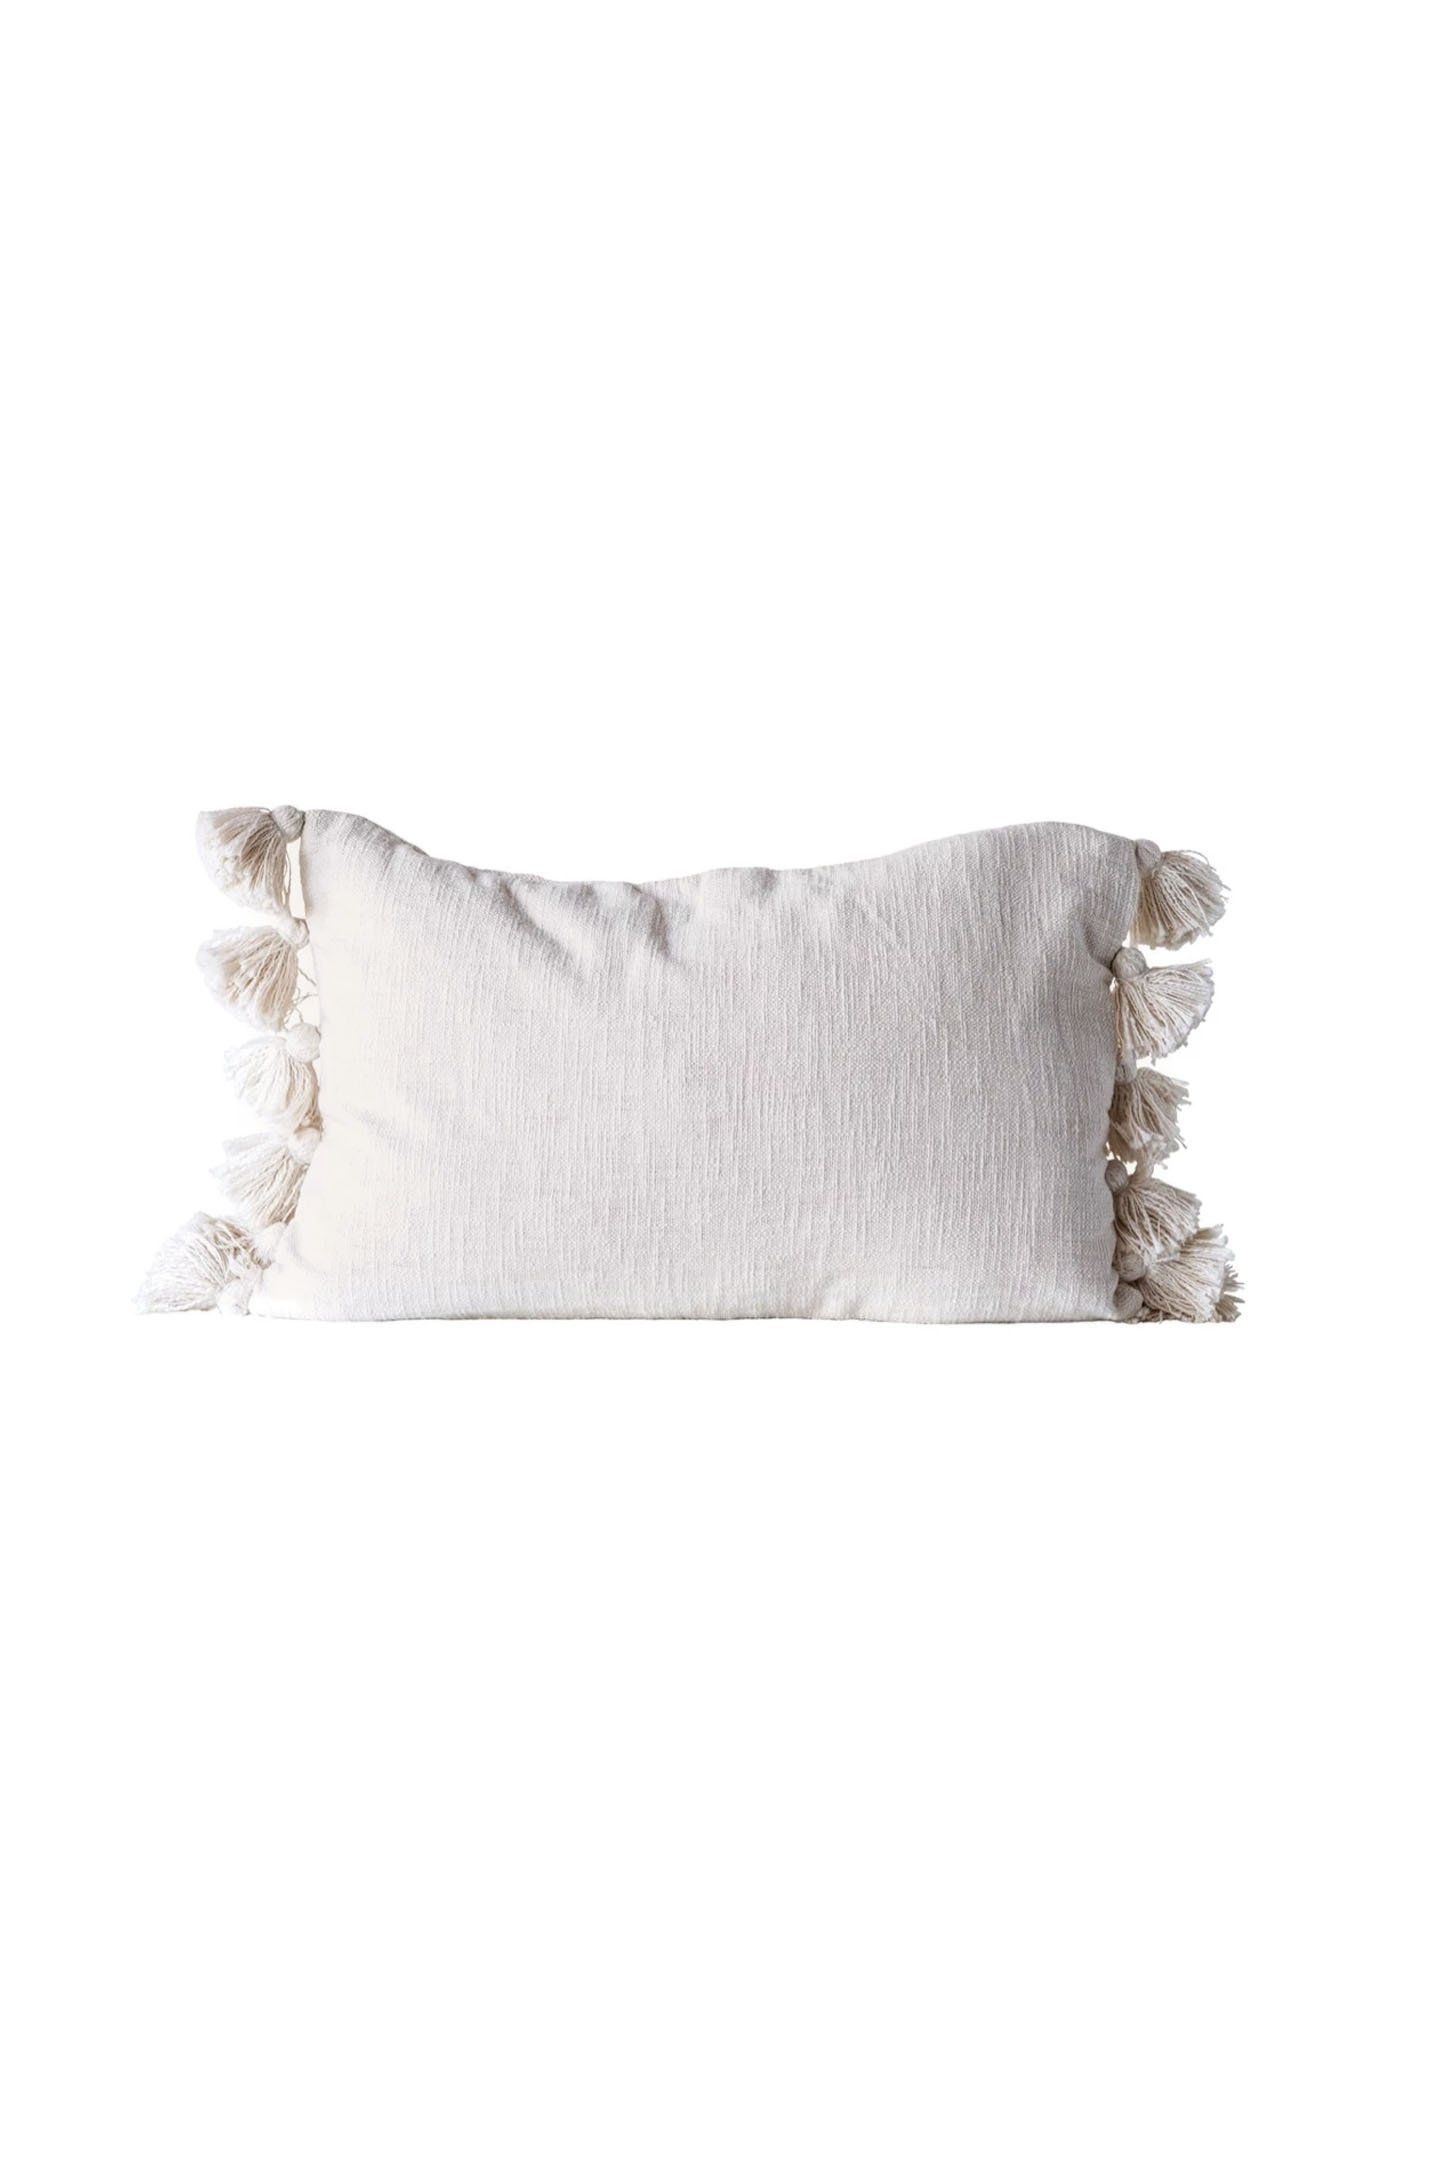 24" x 16" Neva Lumbar Pillow - Image 0